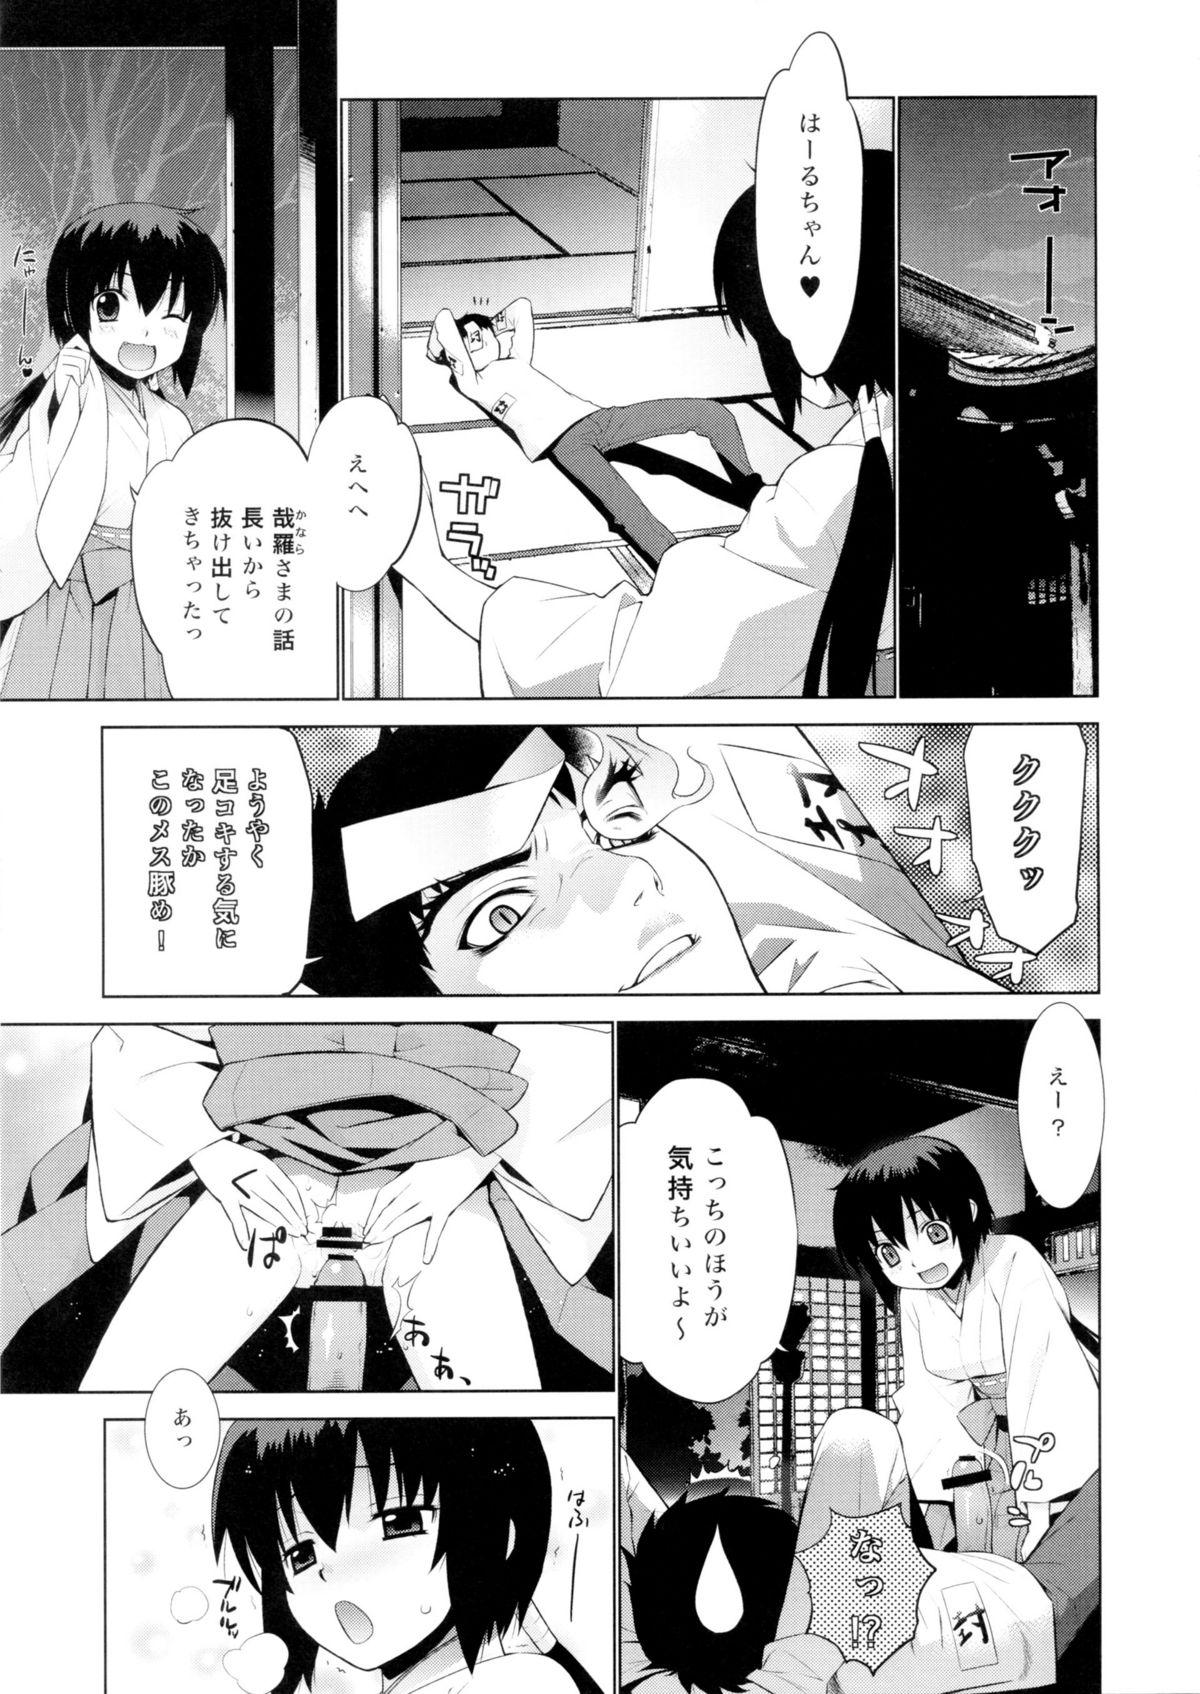 Friends Kanara-sama no Nichijou Go - Tonari no miko san wa minna warau Moneytalks - Page 7